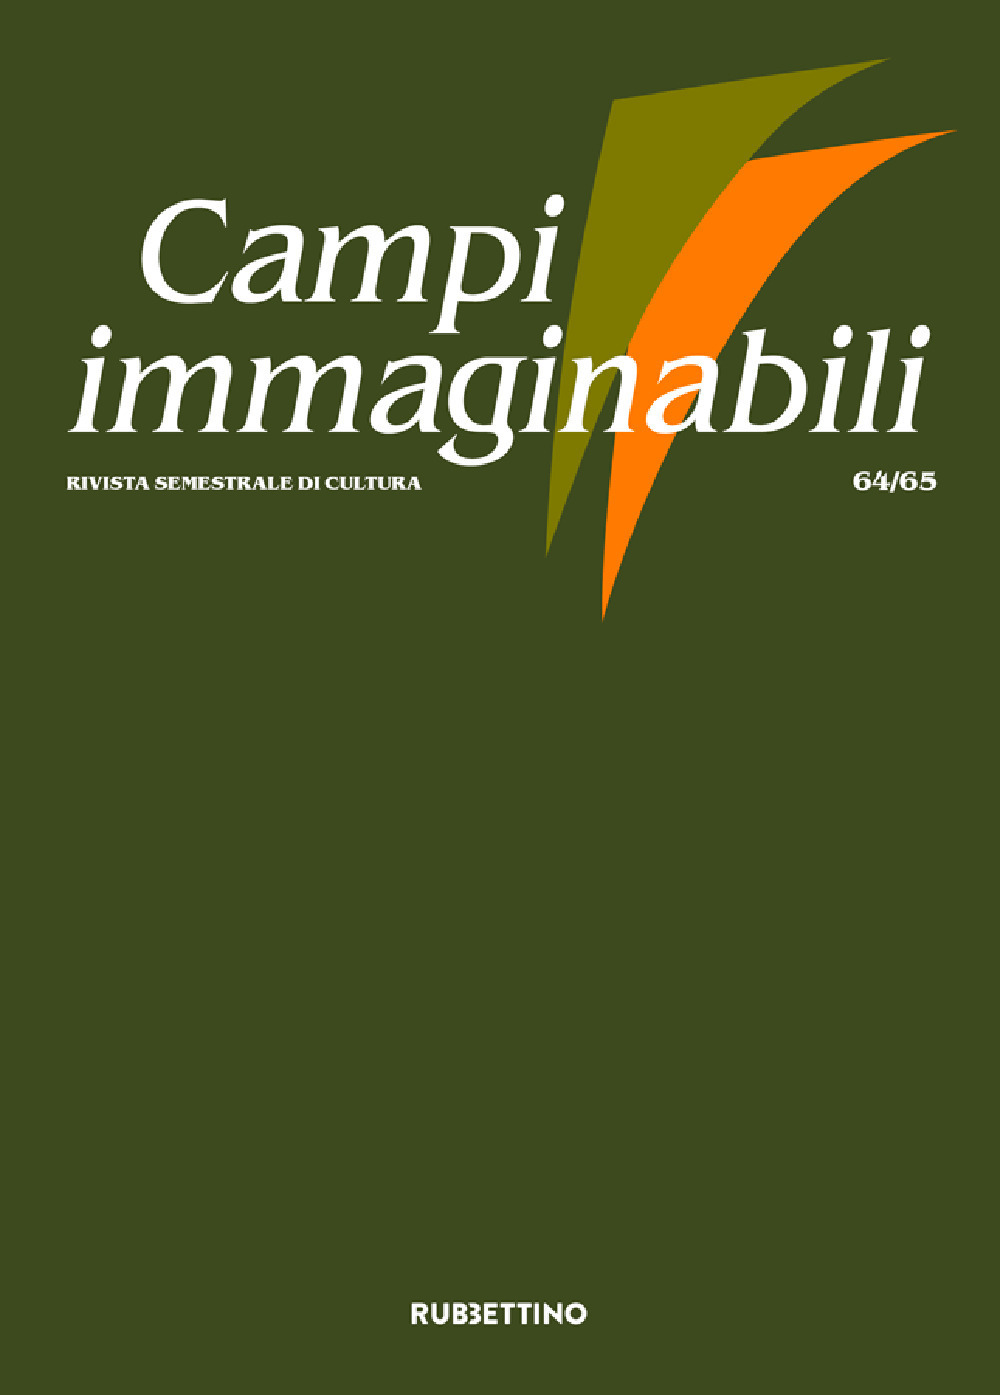 Libri Campi Immaginabili Vol 64-65 NUOVO SIGILLATO, EDIZIONE DEL 26/01/2022 SUBITO DISPONIBILE